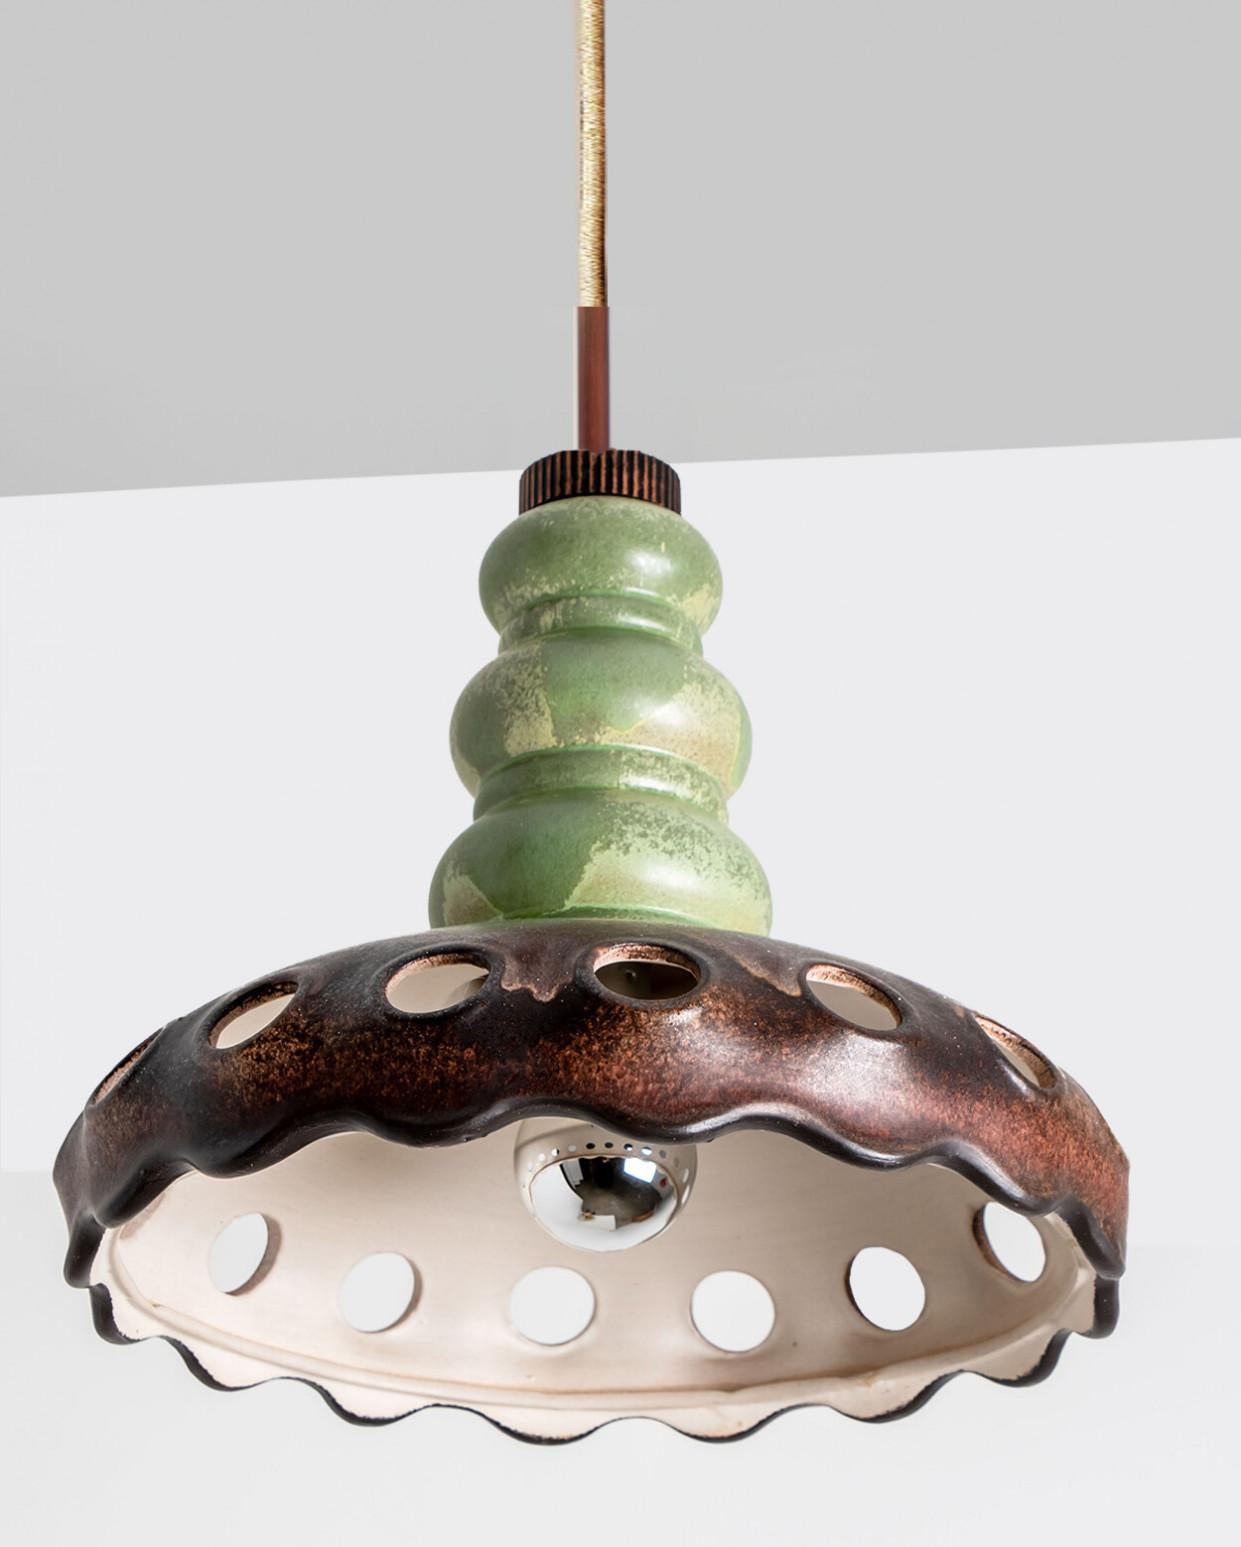 Belle suspension ronde de forme inhabituelle, en céramique brune et verte, fabriquée dans les années 1970 en Allemagne.

Dimensions :
Diamètre : 34 cm (13,39